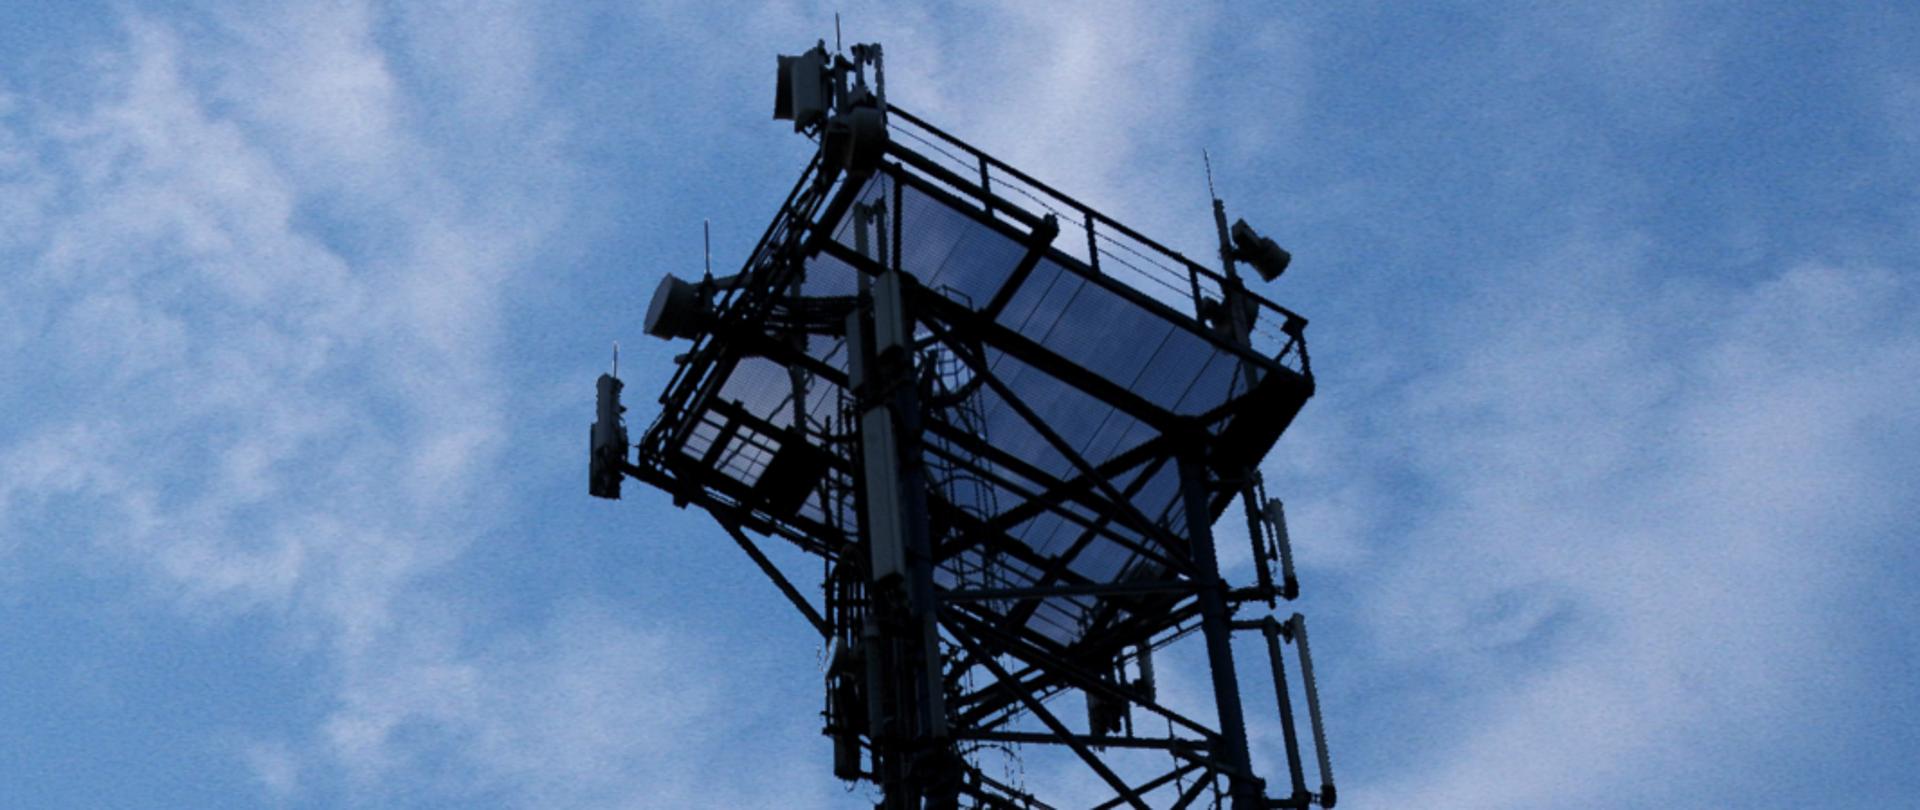 Zdjęcie części masztu telefonii komórkowej z widocznymi antenami LTE i radiolinią.